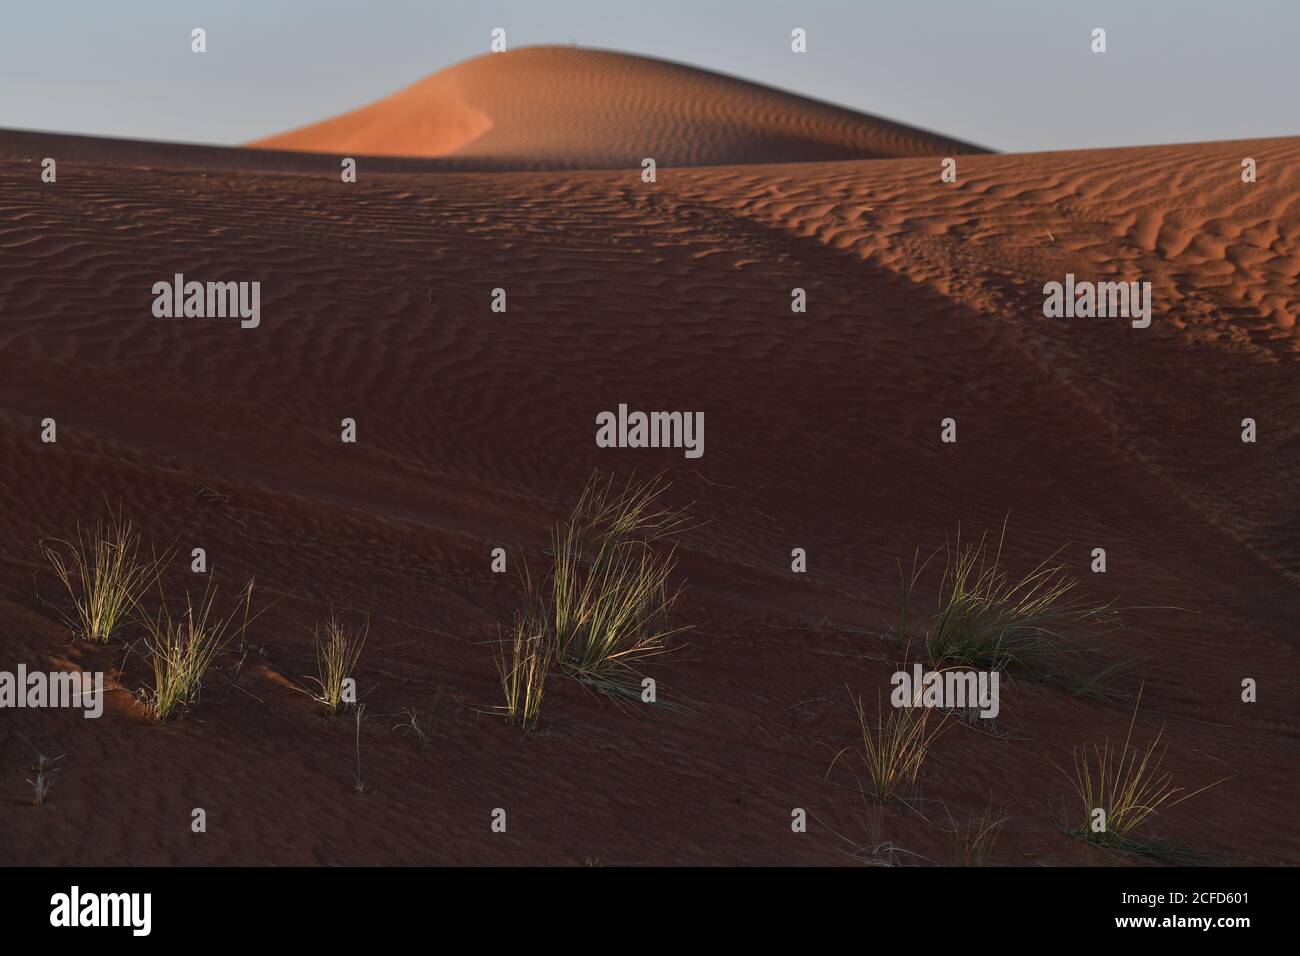 Le dune di sabbia del deserto della Penisola Araba sono contornate in forme e dimensioni diverse dai mutevoli venti dei paesaggi desertici. Foto Stock